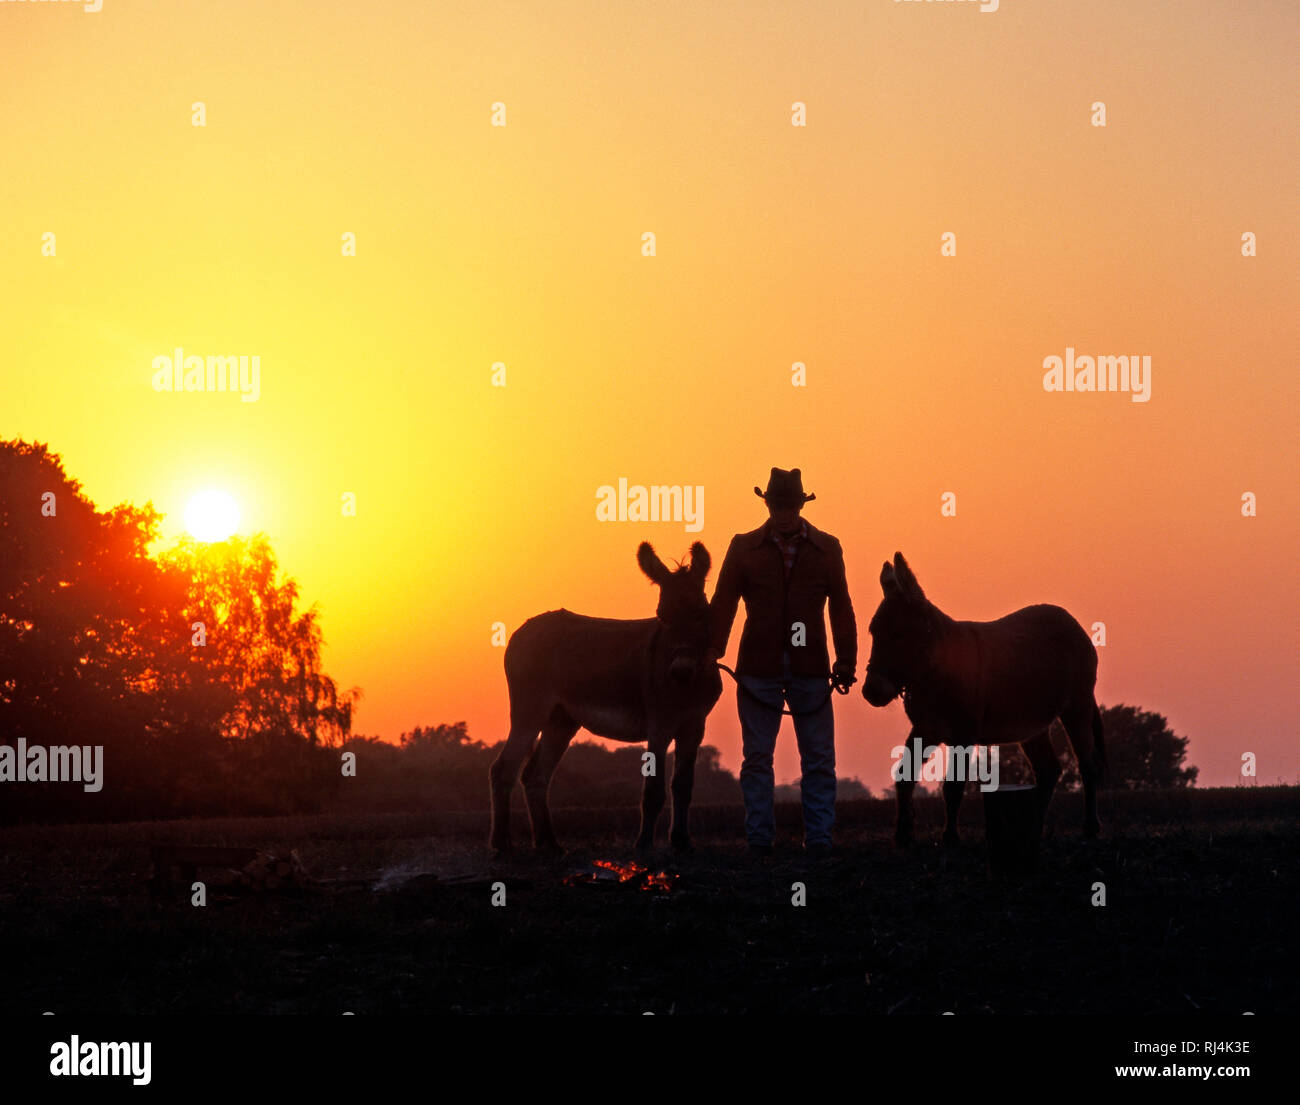 Mann mit Cowboyhut und zwei Eseln neben Feuerstelle, Gegenlicht, Silhouetten, untergehende Sonne, Abend, Foto Stock